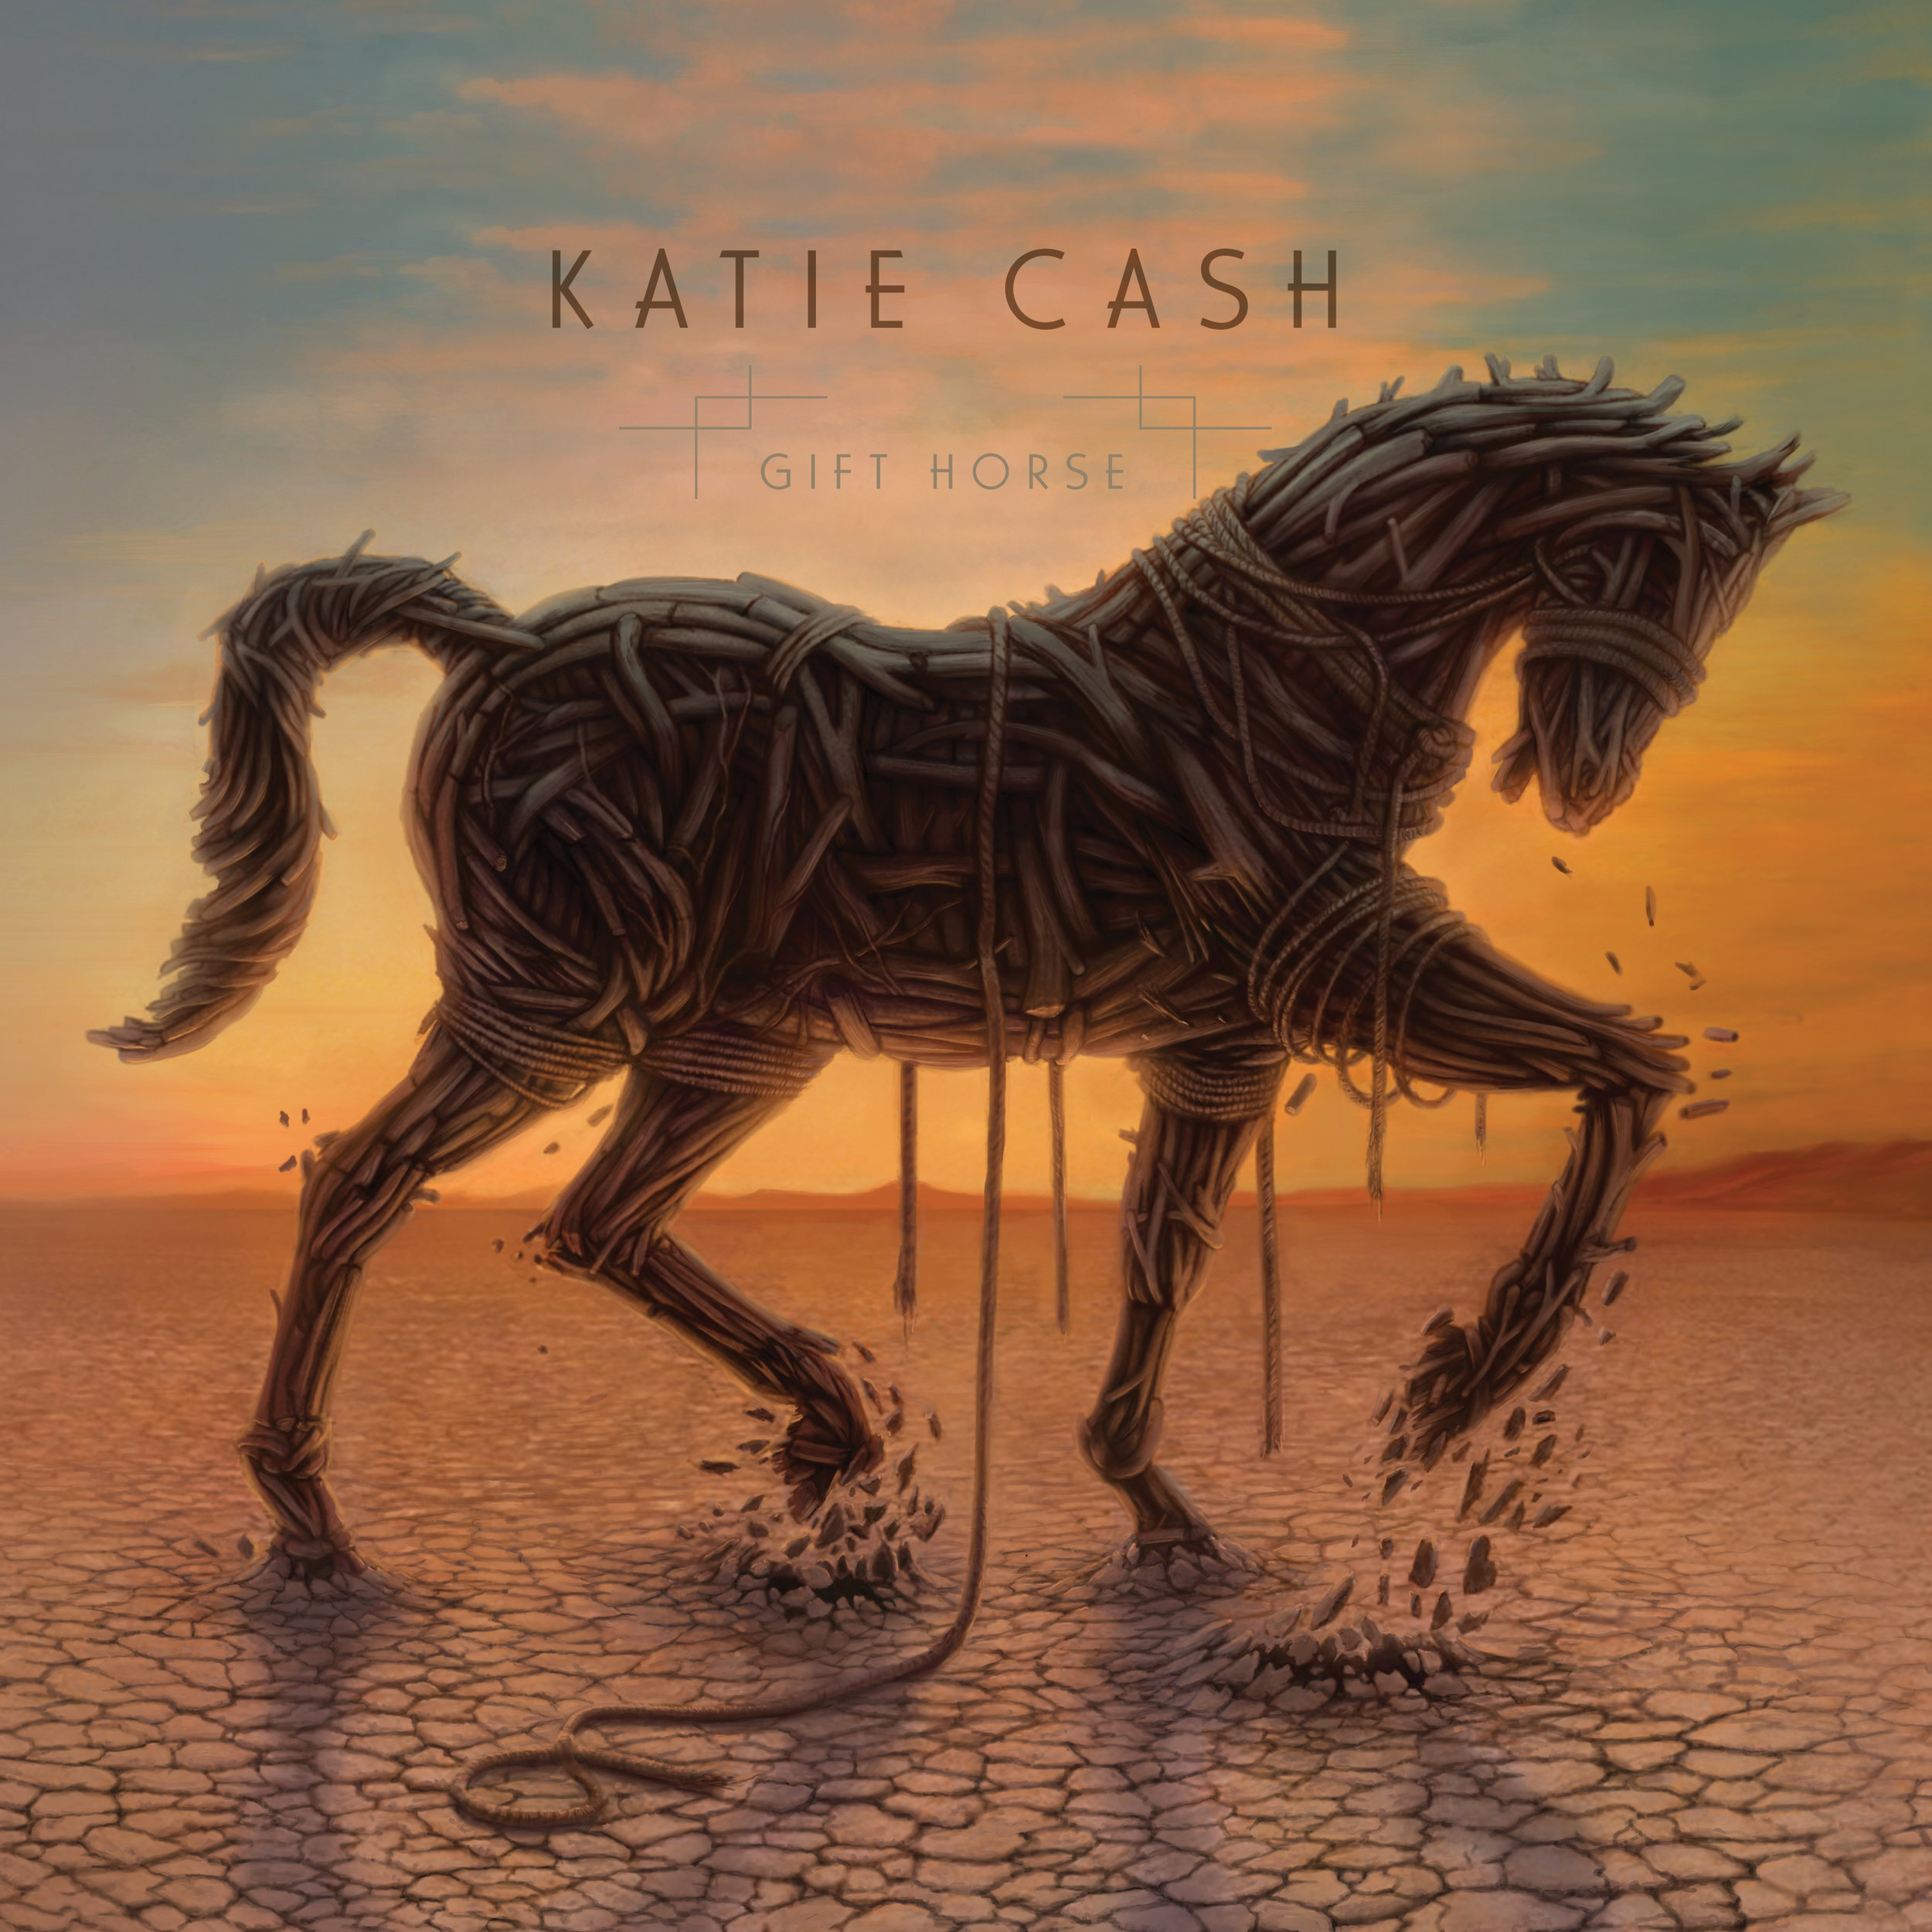 Katie Cash, "Gift Horse"